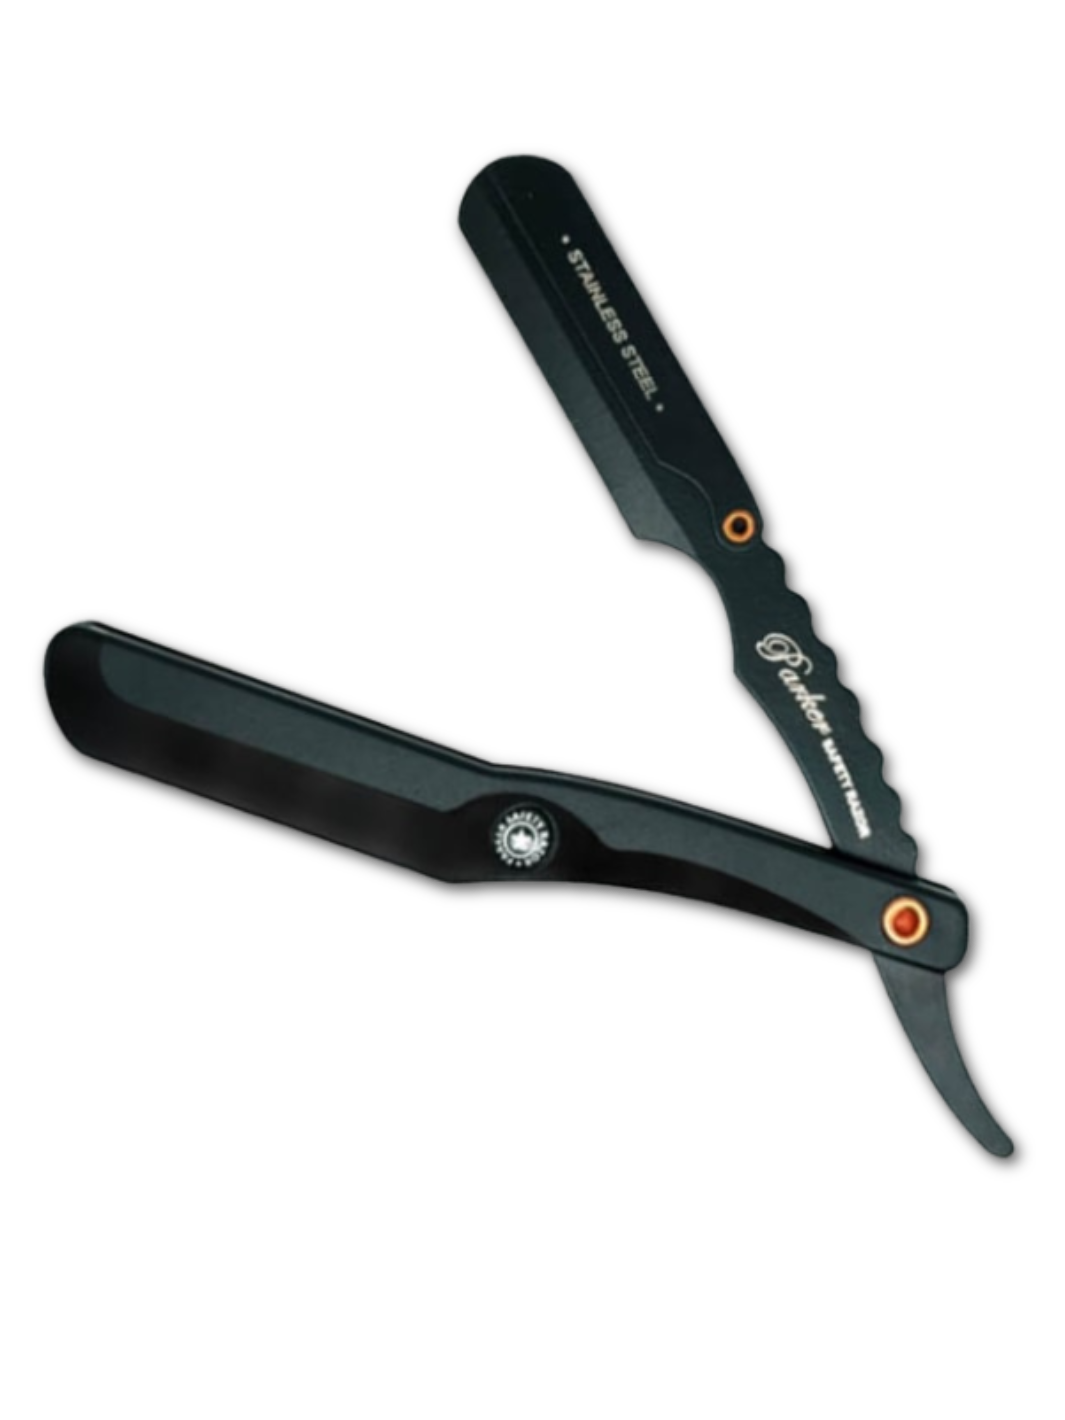 Parker SRBBA Rasiermesser mit schwarzem Edelstahlgriff und Signaturlogo, erhältlich bei Phullcutz für eine präzise und stilvolle Rasur.